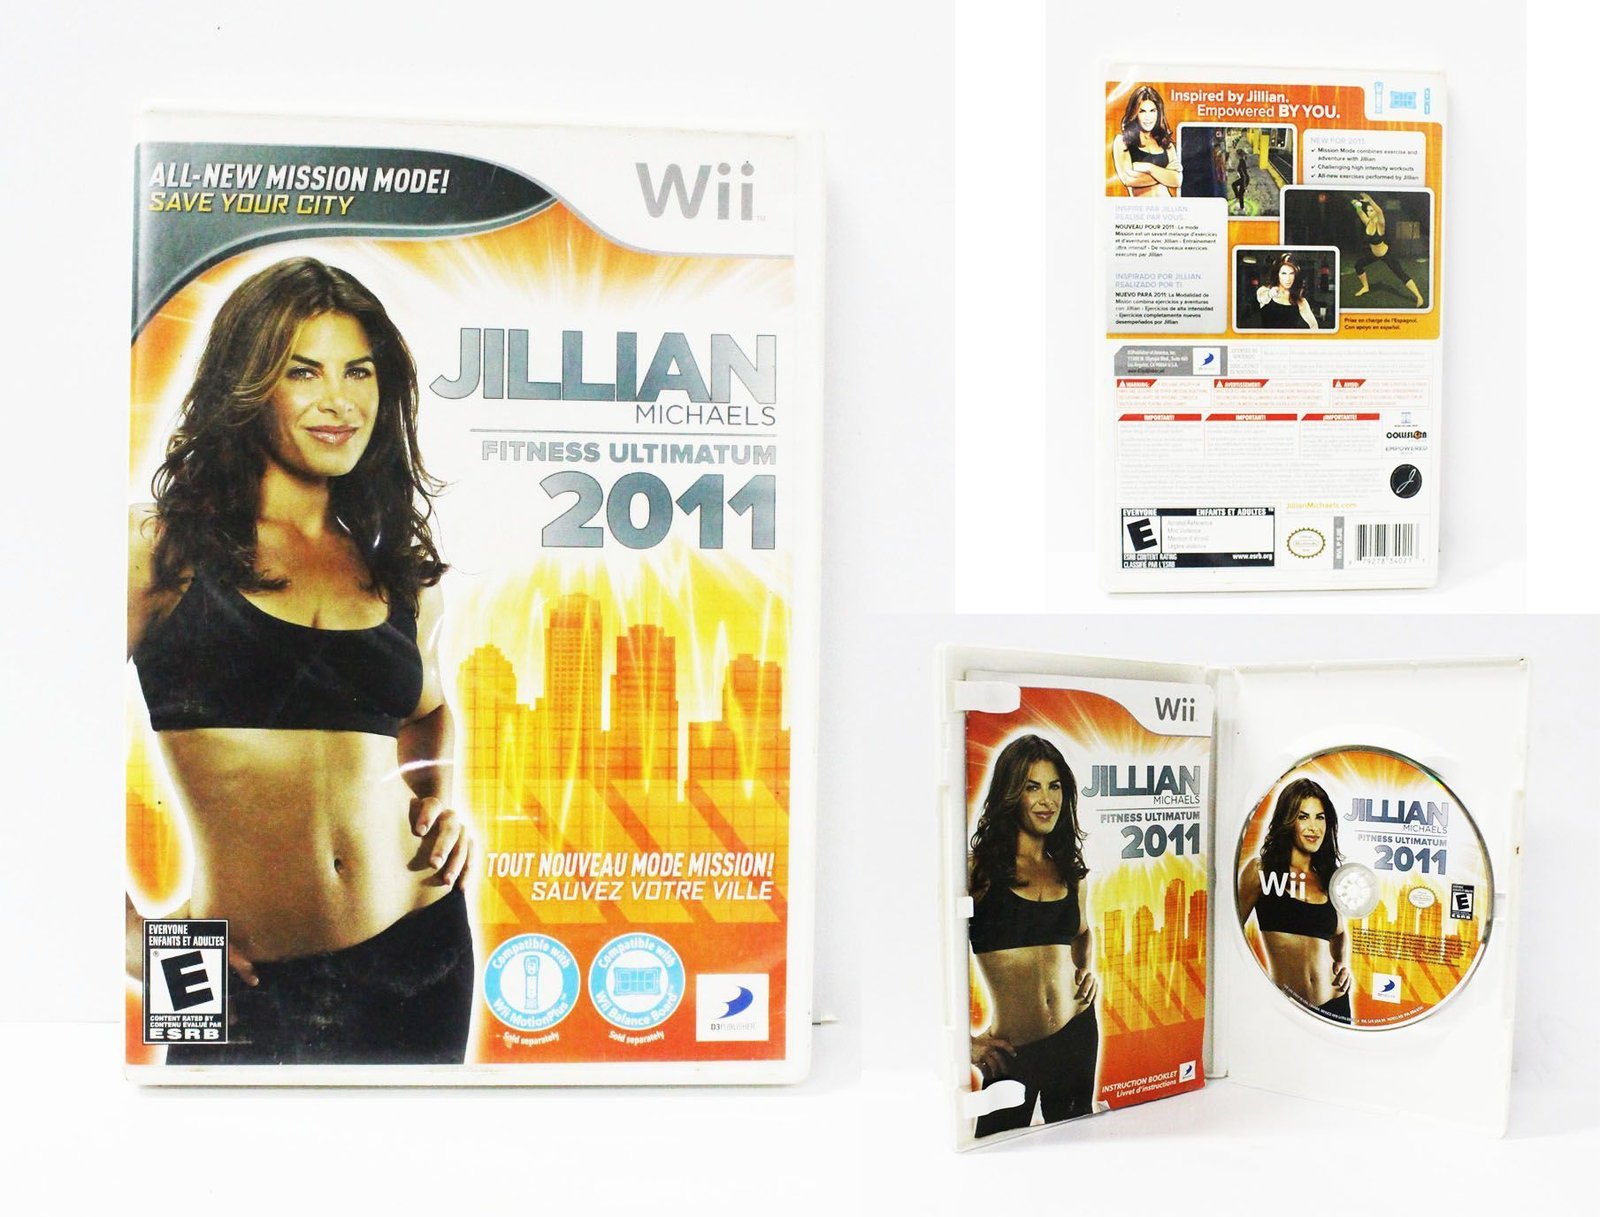 Videojuegos para consola Wii Jillian Michaelis Fitness ultimatum 2011 Ecuador Comprar Venden, Bonita Apariencia ideal para los fans, practica, Hermoso material de papel Color como en la imagen Estado usado